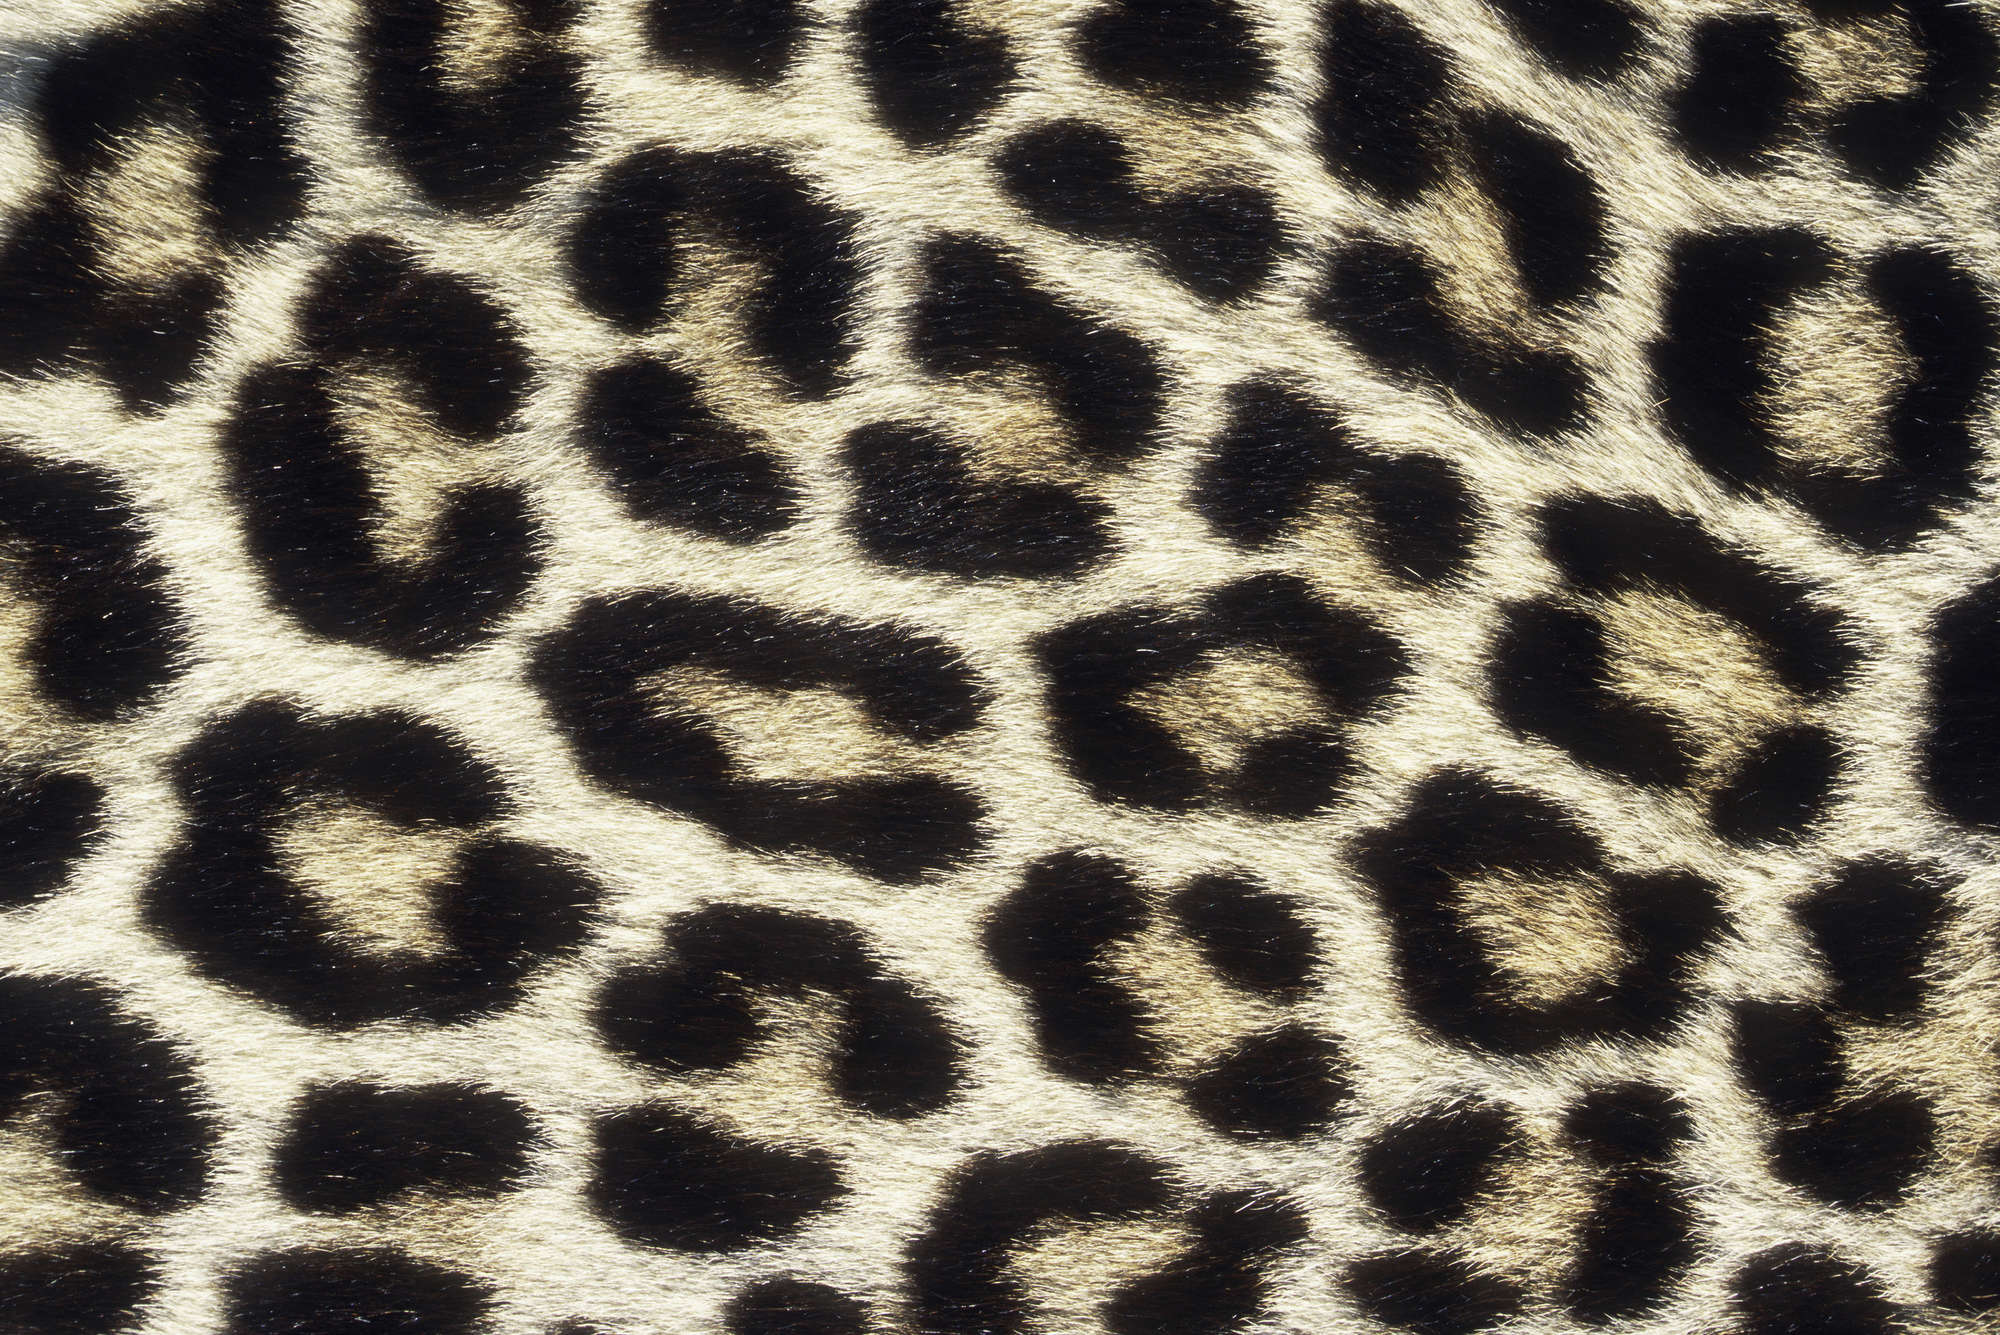             Fototapete mit Leopardenmuster – Strukturiertes Vlies
        